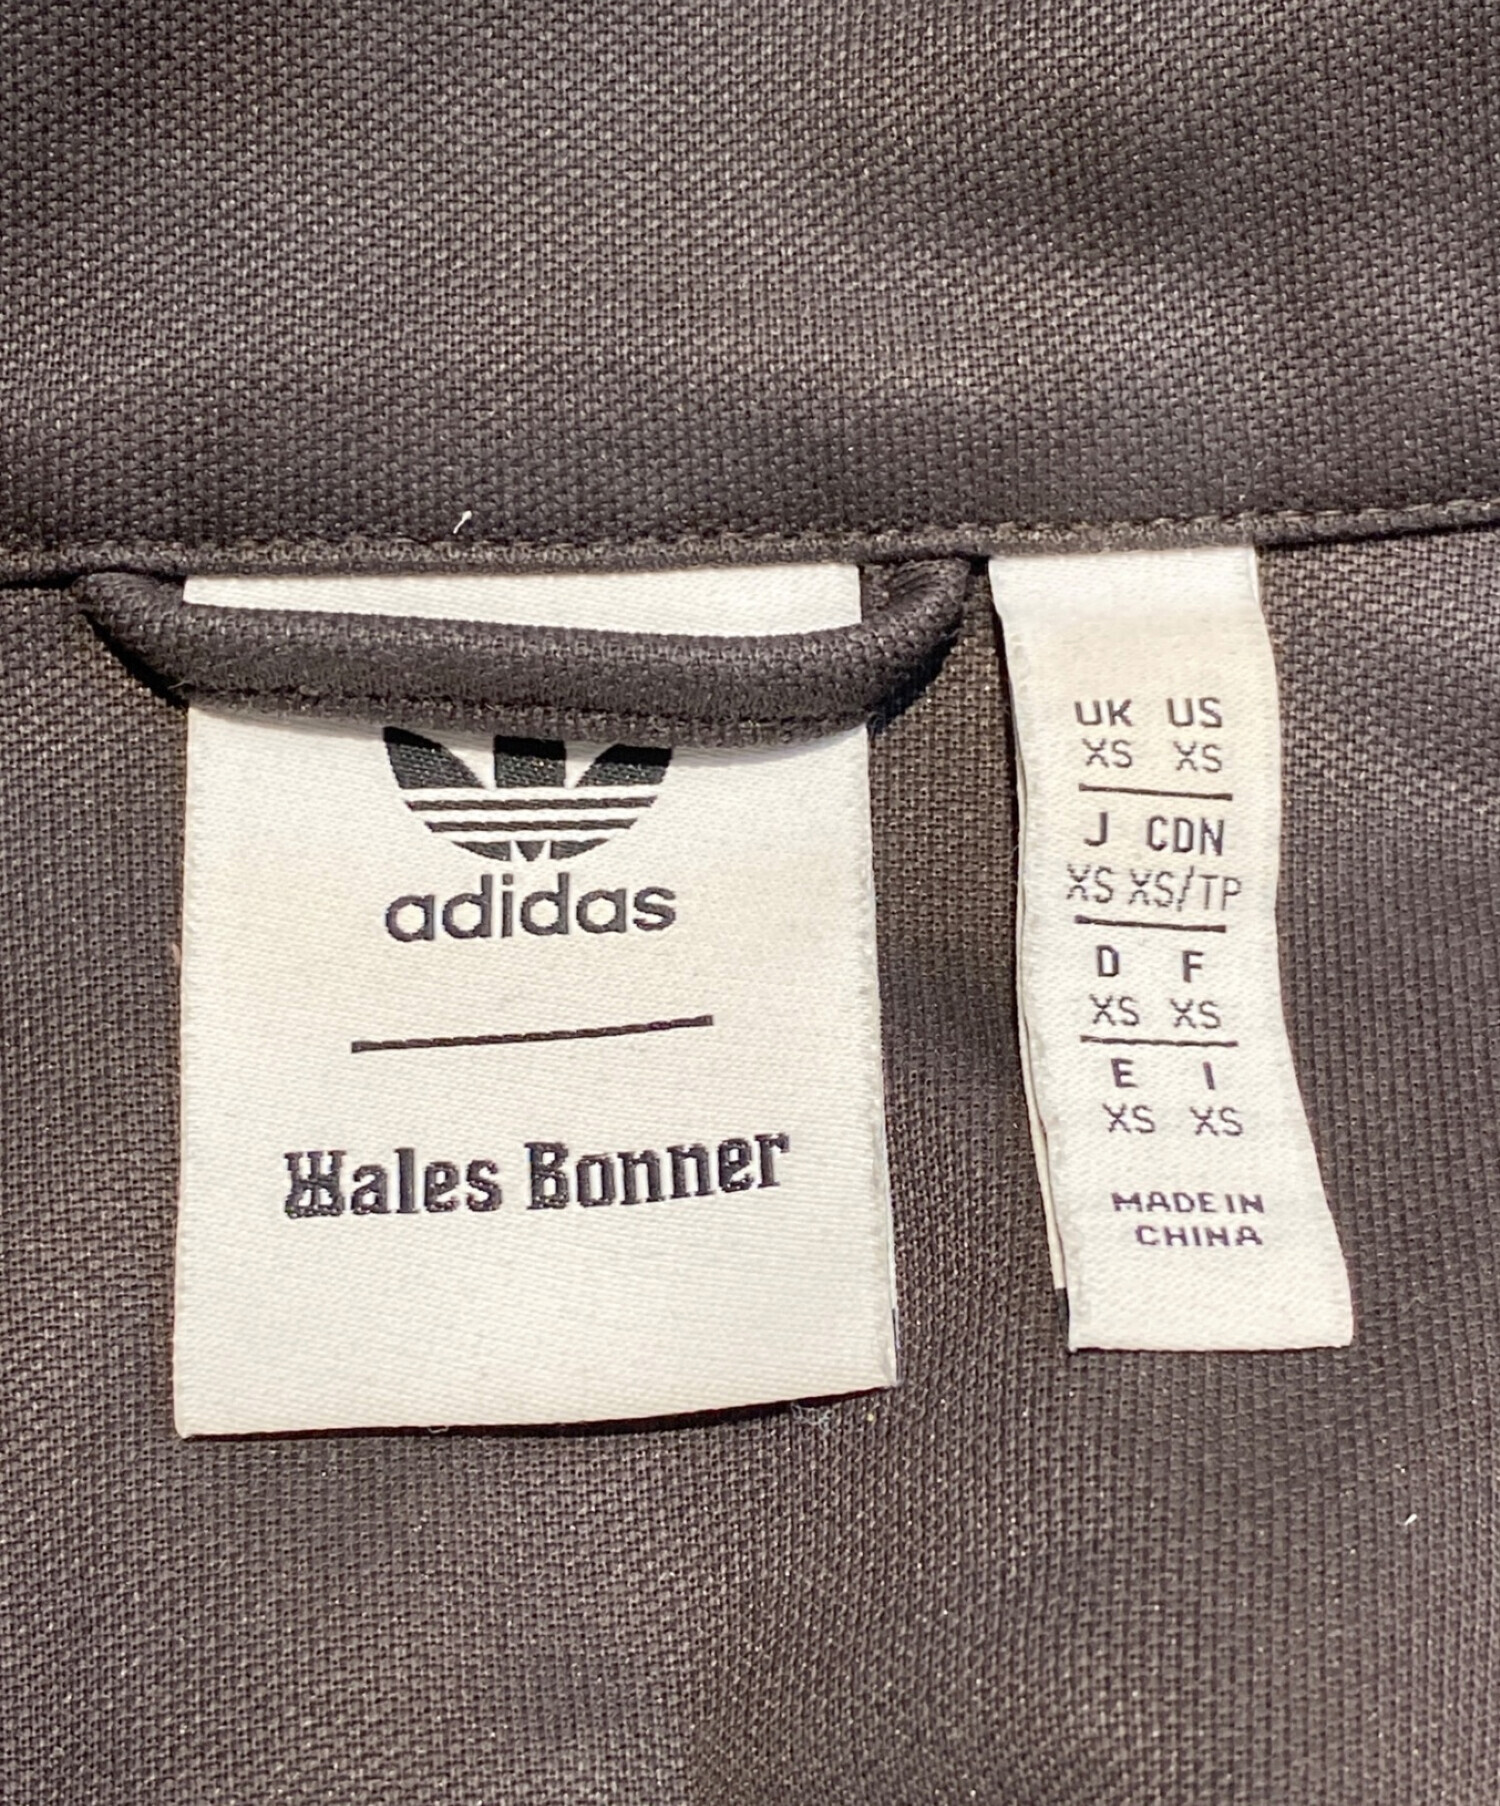 adidas (アディダス) WALES BONNER (ウェールズボナー) 23SS ロゴデザインハリントンジャケット ダークブラウン サイズ:XS